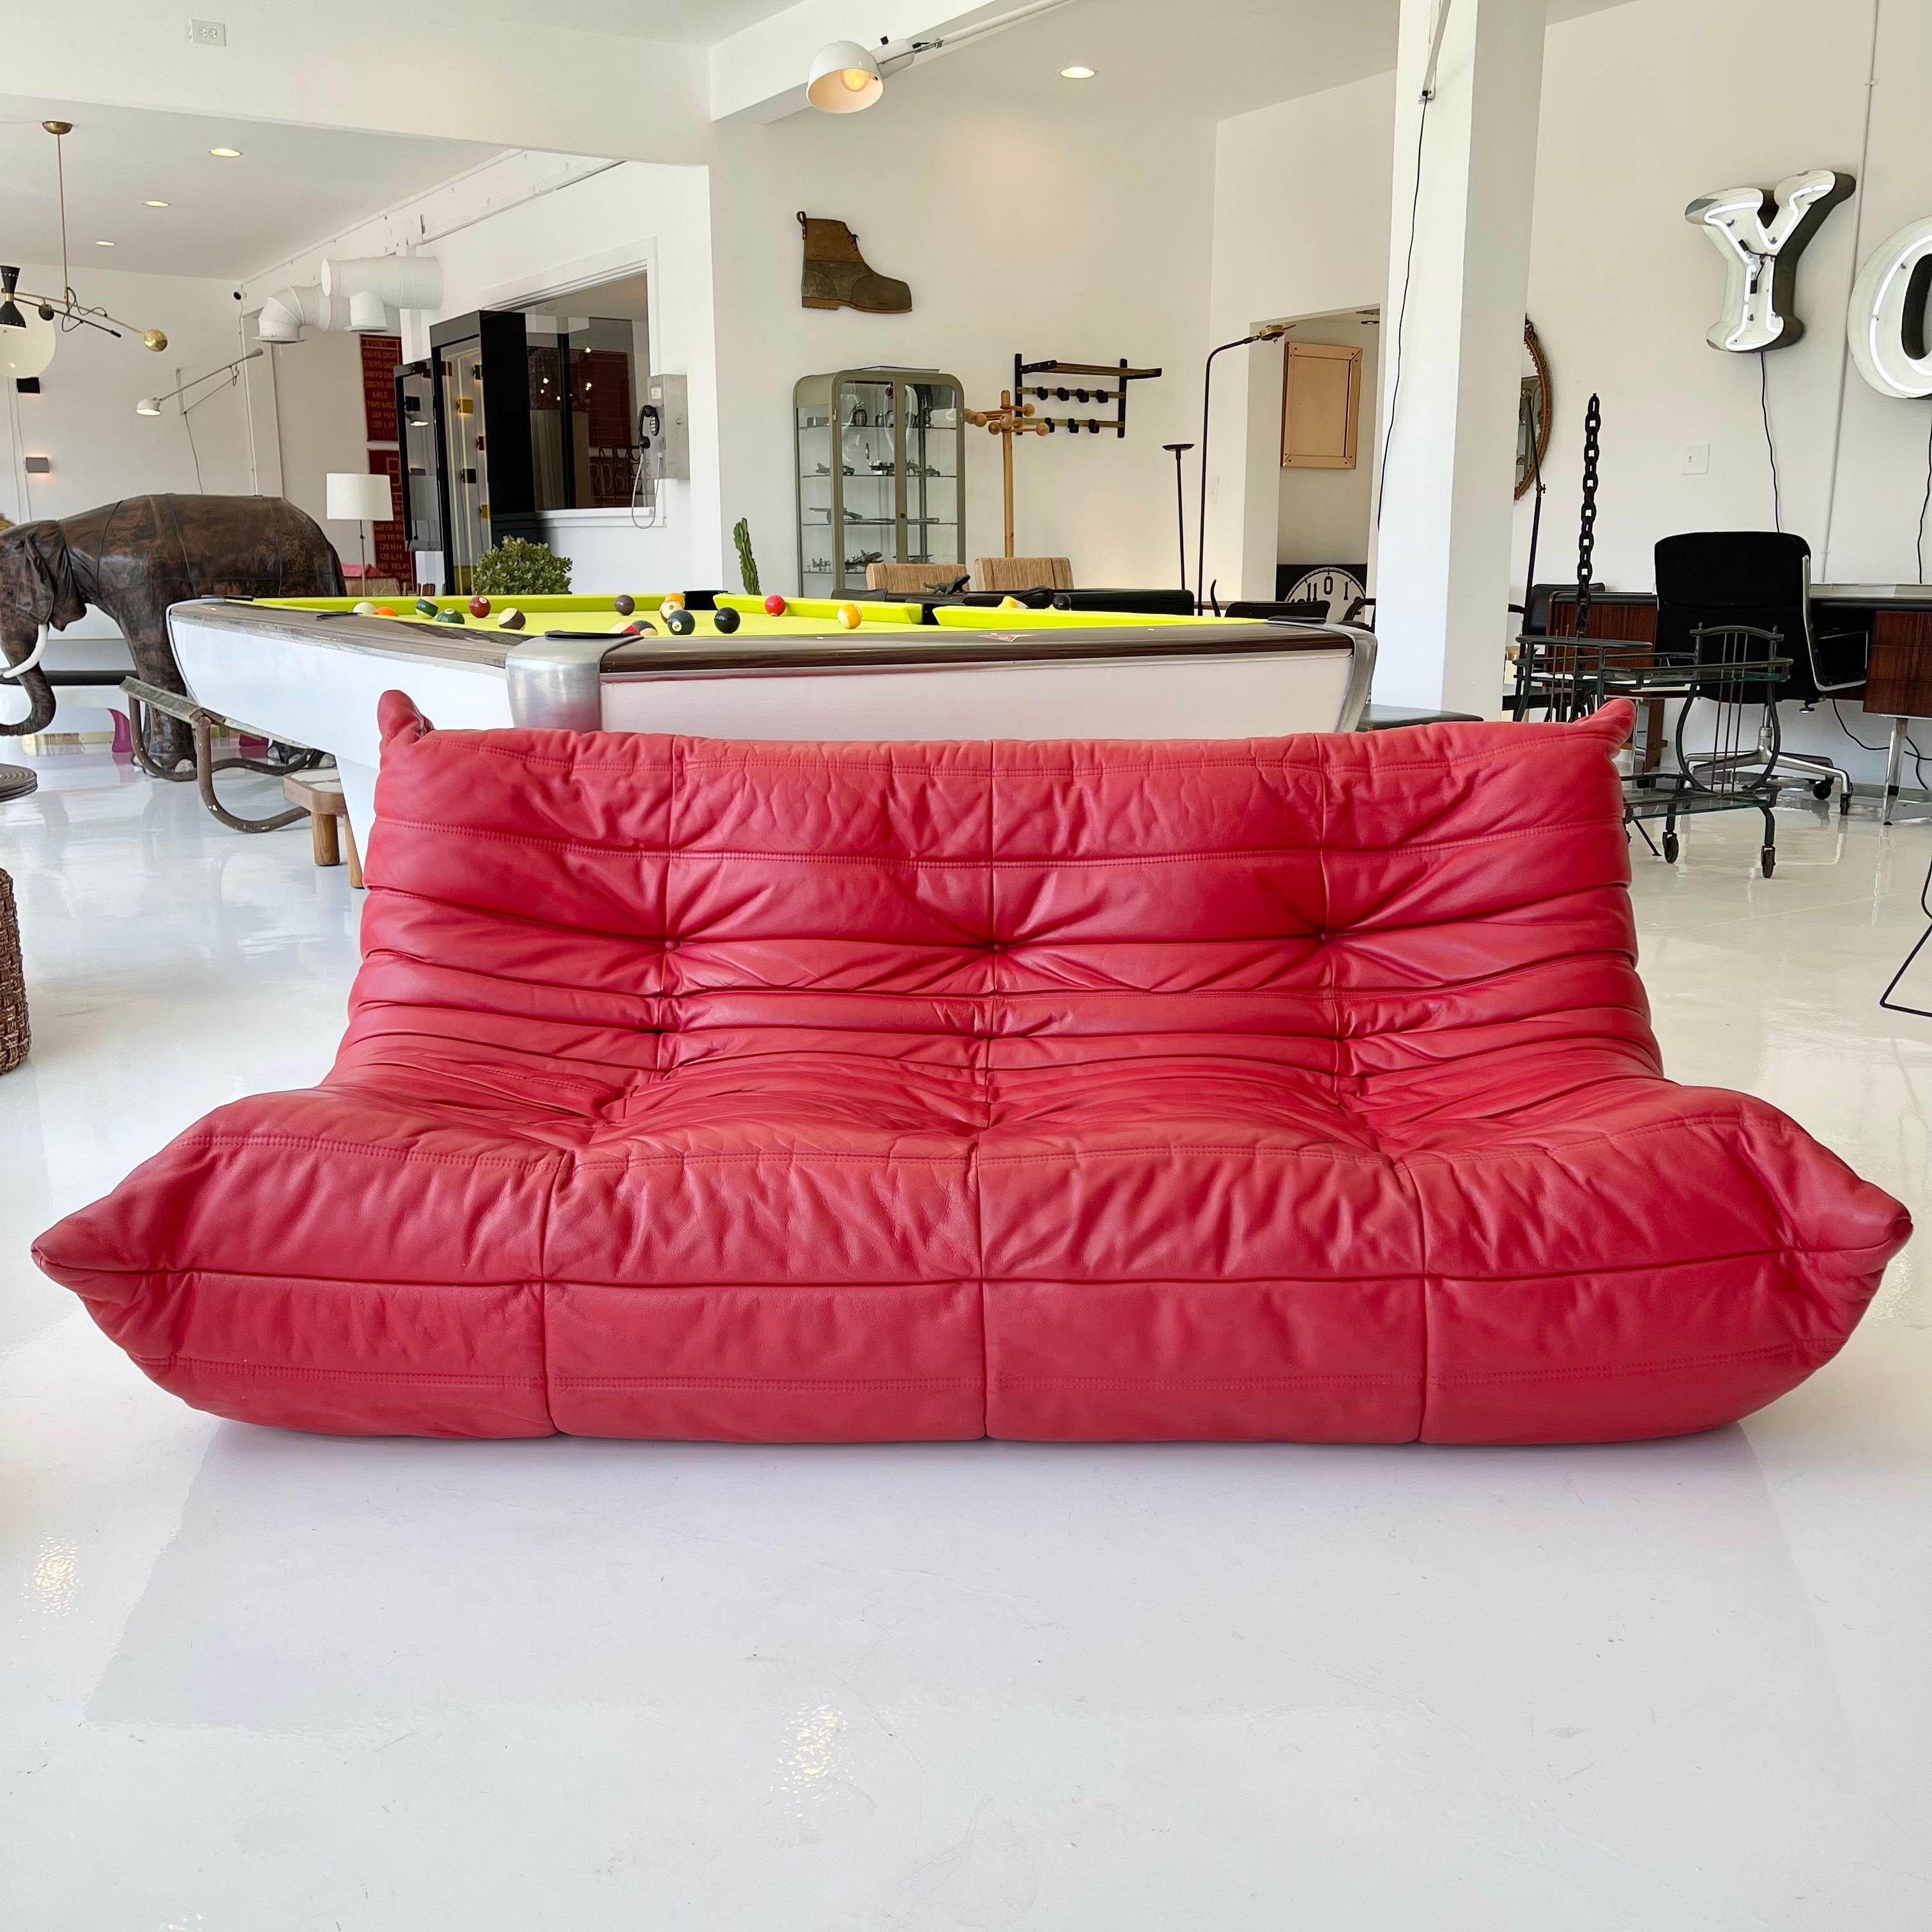 Klassisches französisches 3-Sitzer-Sofa Togo von Michel Ducaroy für die Luxusmarke Ligne Roset. Ursprünglich in den 1970er Jahren entworfen, ist das ikonische togo Sofa heute ein Designklassiker. Dieses Sofa wird in seinem originalen roten